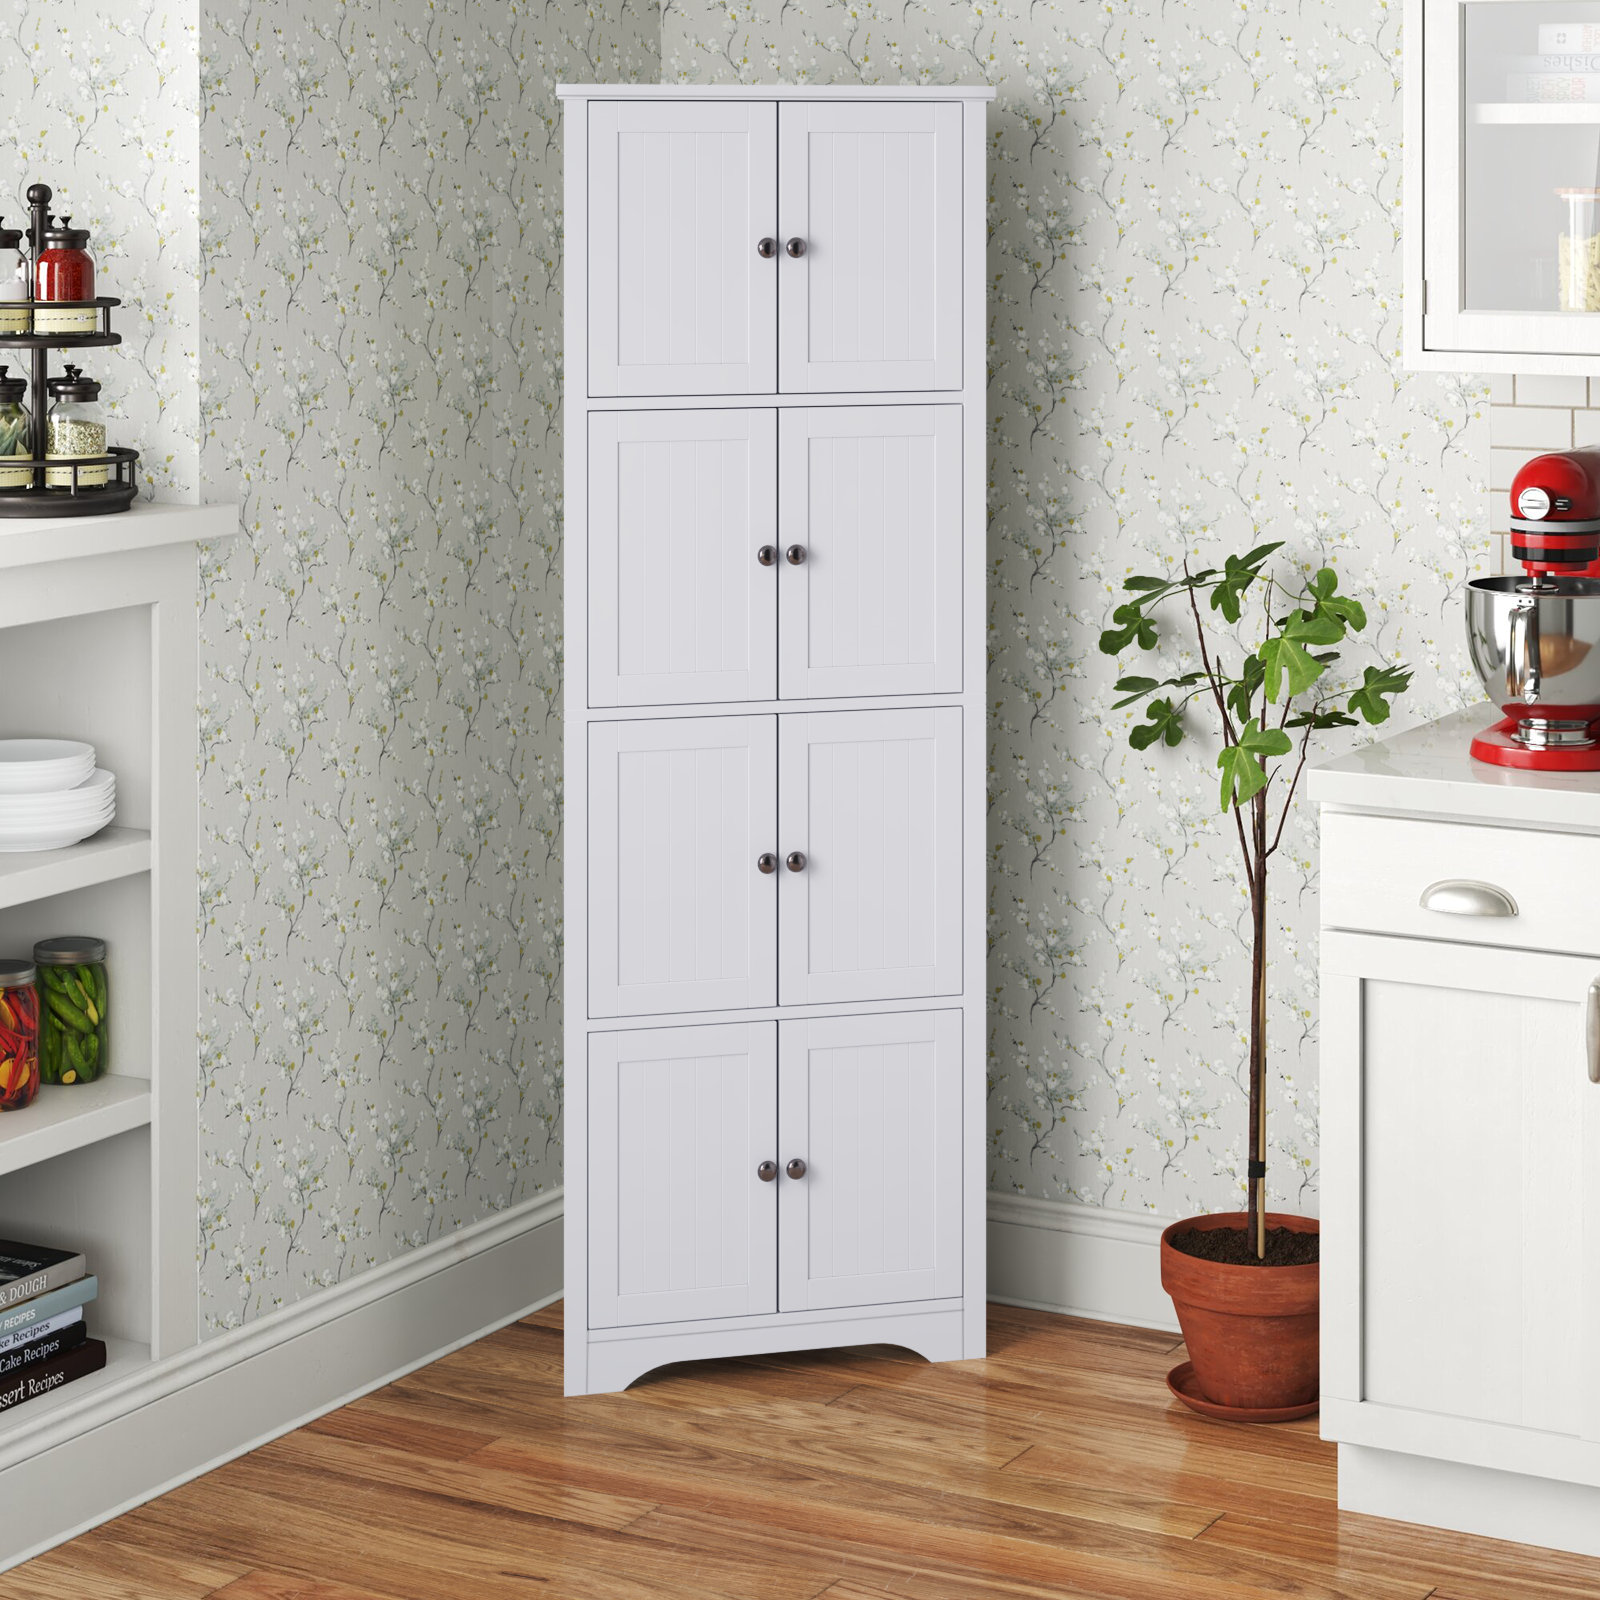 https://assets.wfcdn.com/im/40046711/compr-r85/2481/248189333/klingbeil-corner-kitchen-pantry-storage-cabinet.jpg